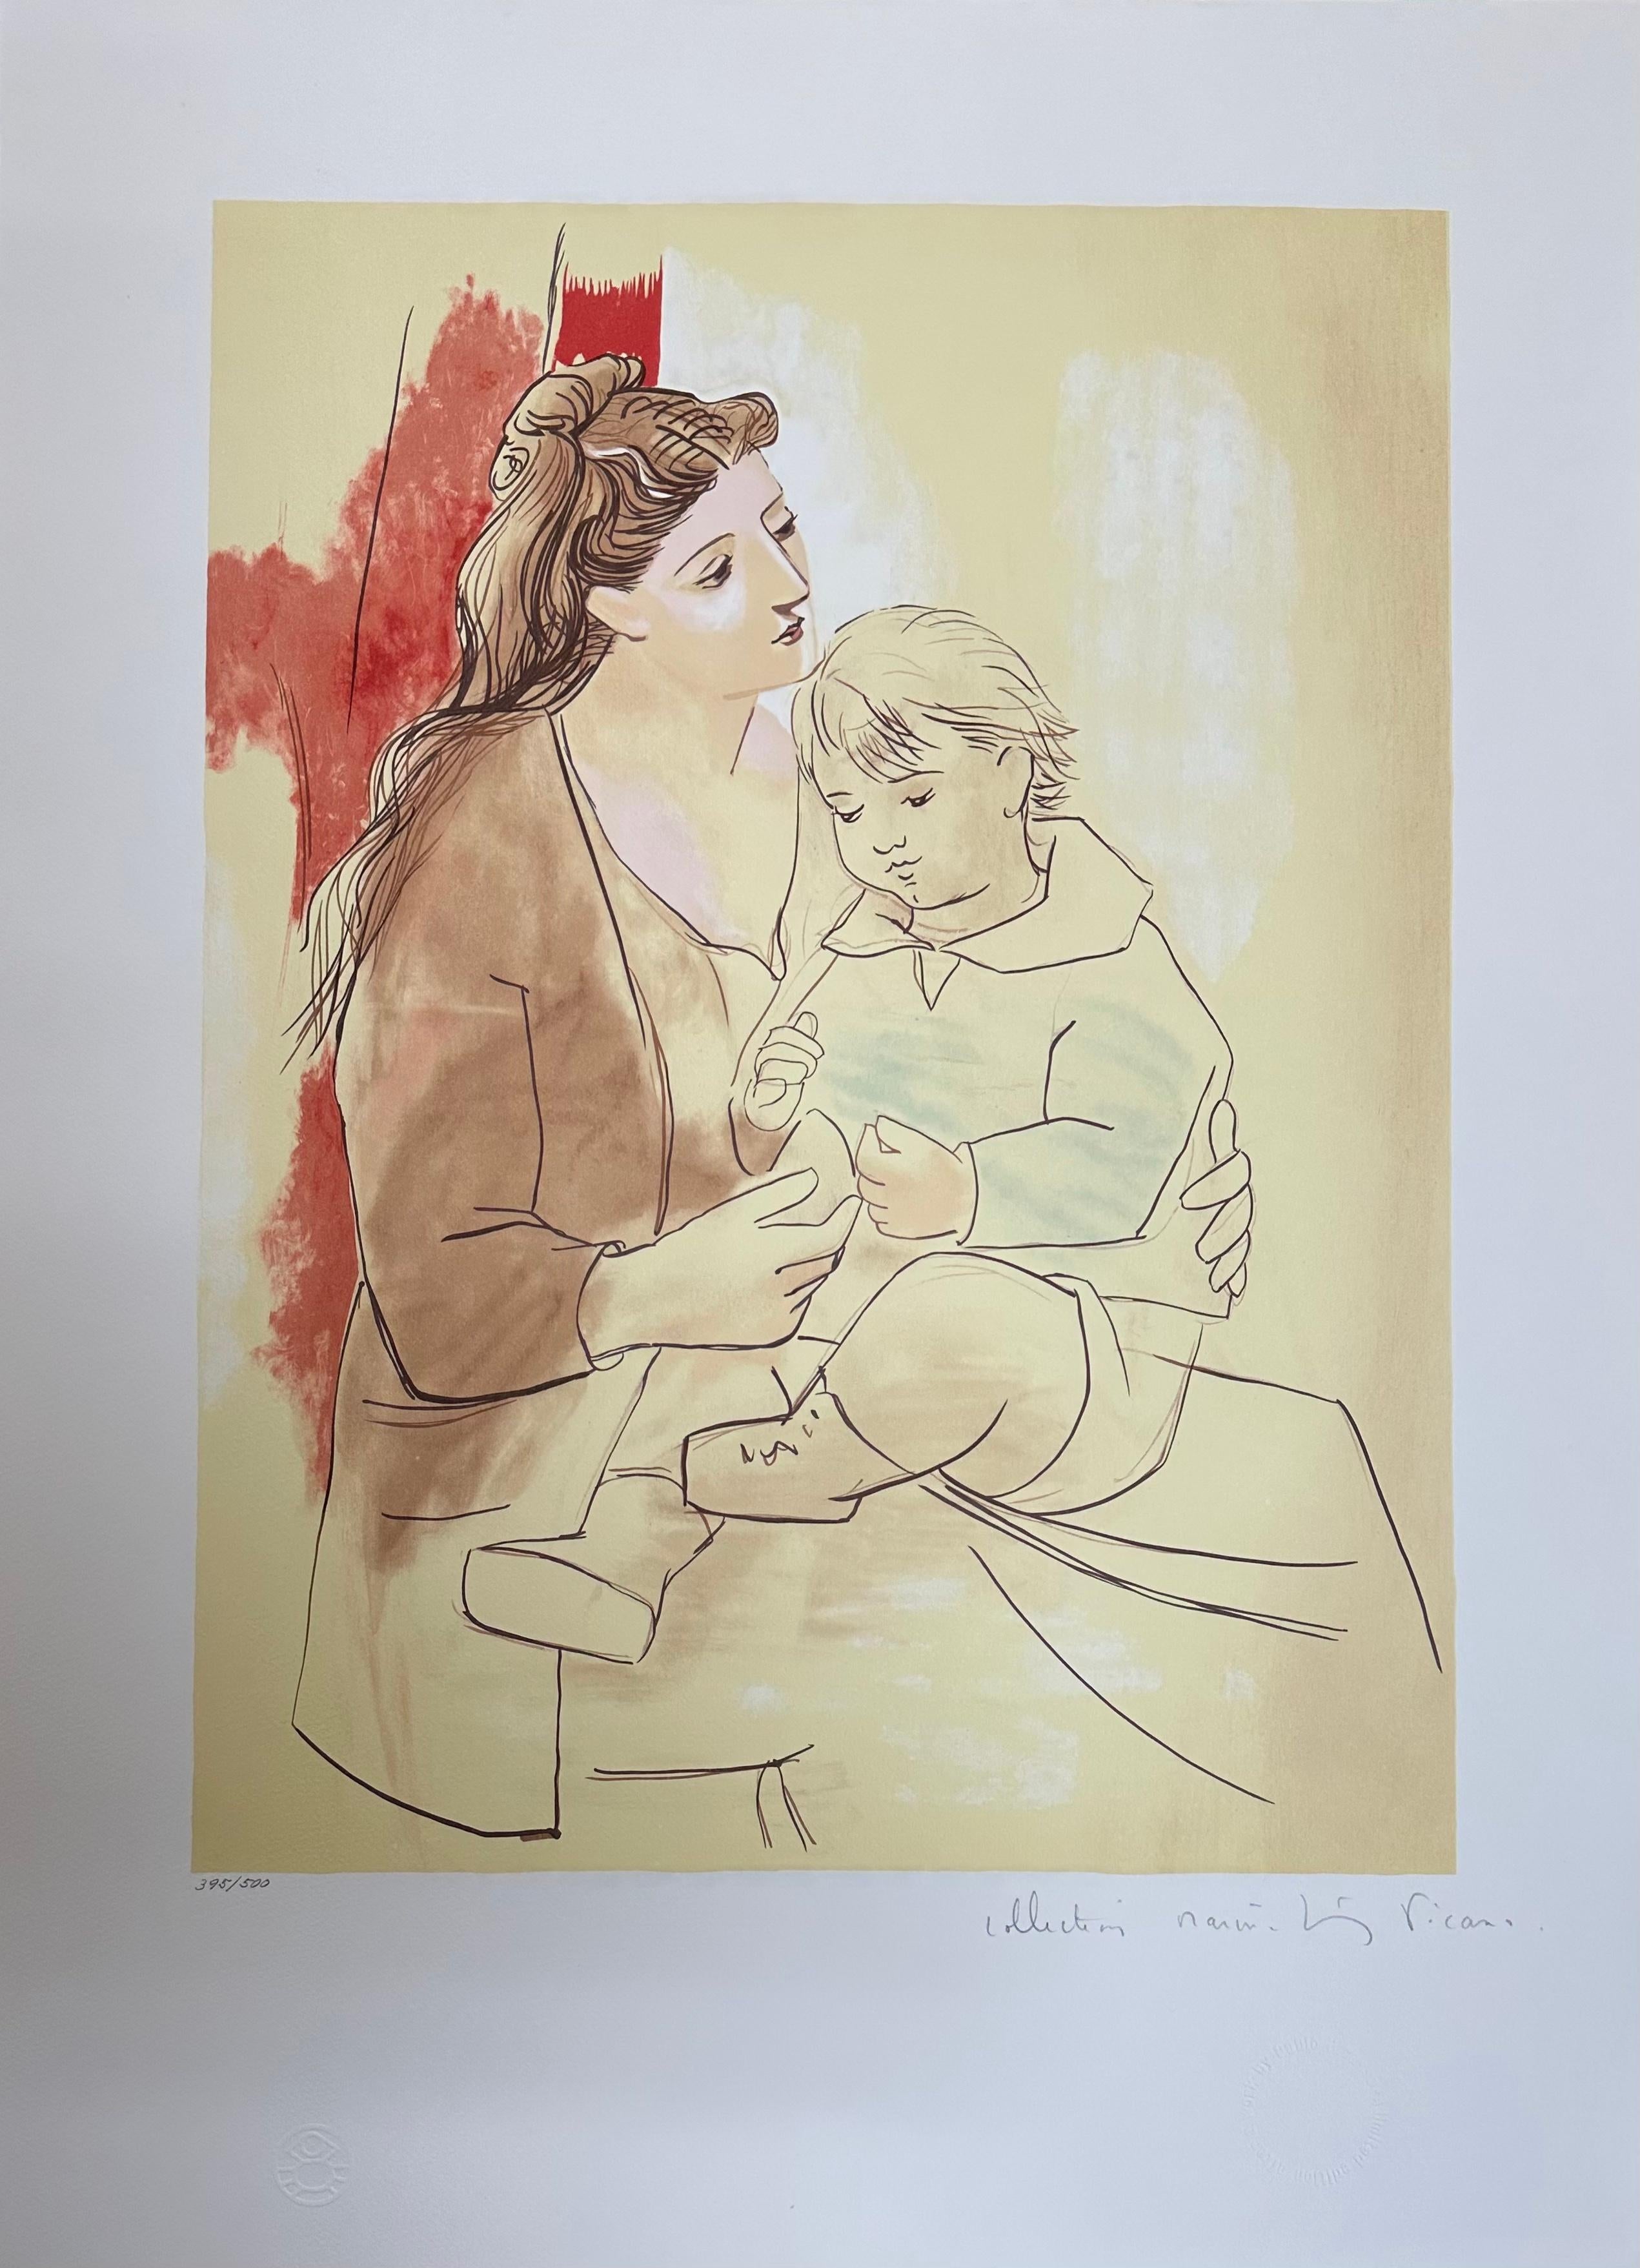 Maternité au Rideau Rouge - Print by (after) Pablo Picasso